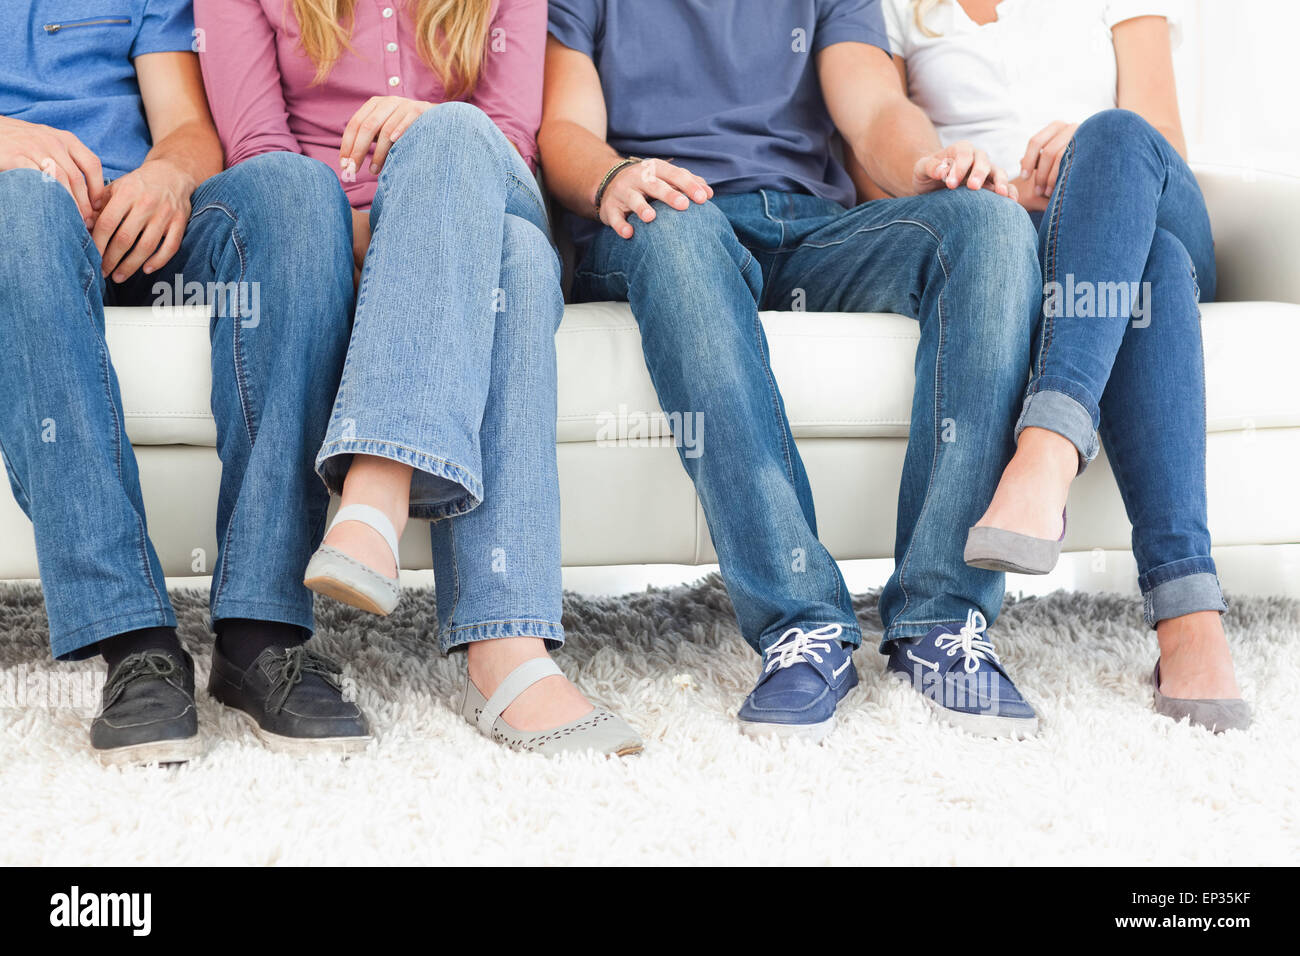 Vier Leute sitzen auf der Couch mit der Kamera fokussiert auf die Beine Stockfoto